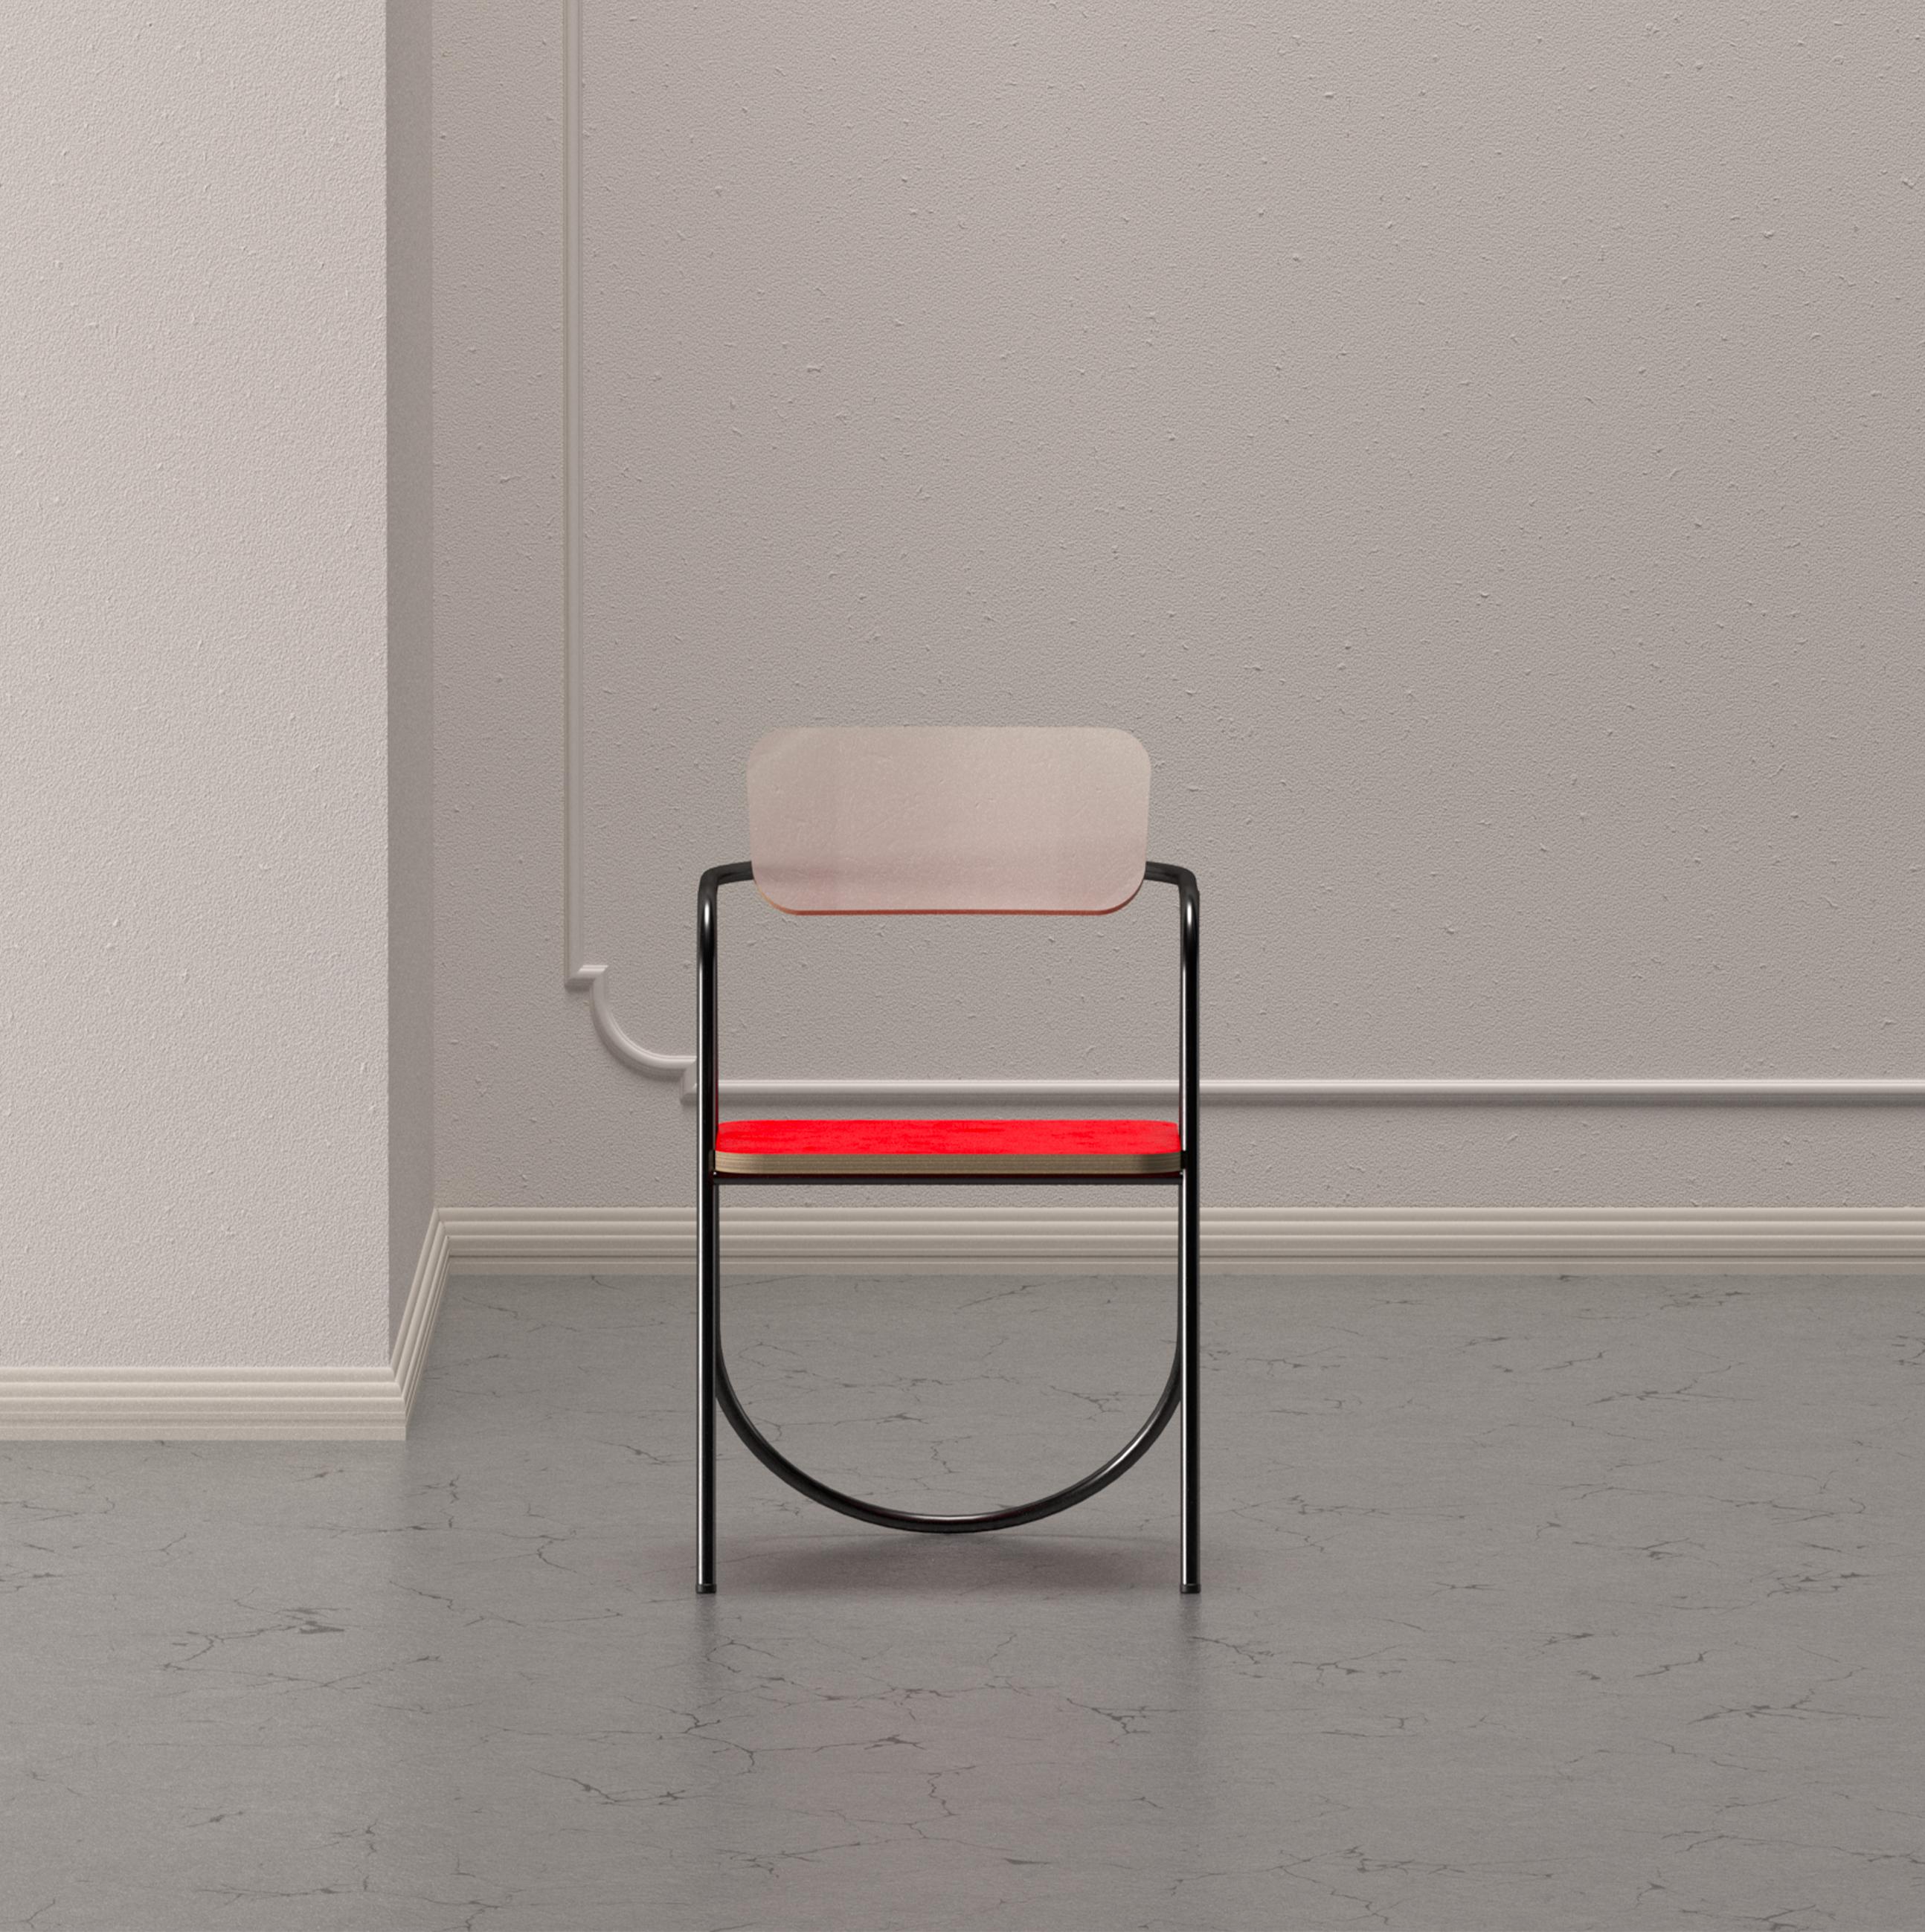 Cette splendide chaise de la Collection La Misciù révèle une forte inspiration vintage dans sa palette chromatique de blanc, orange et sarcelle. Doté d'un cadre cylindrique aérien en acier laqué blanc traçant des profils dynamiques, le design est